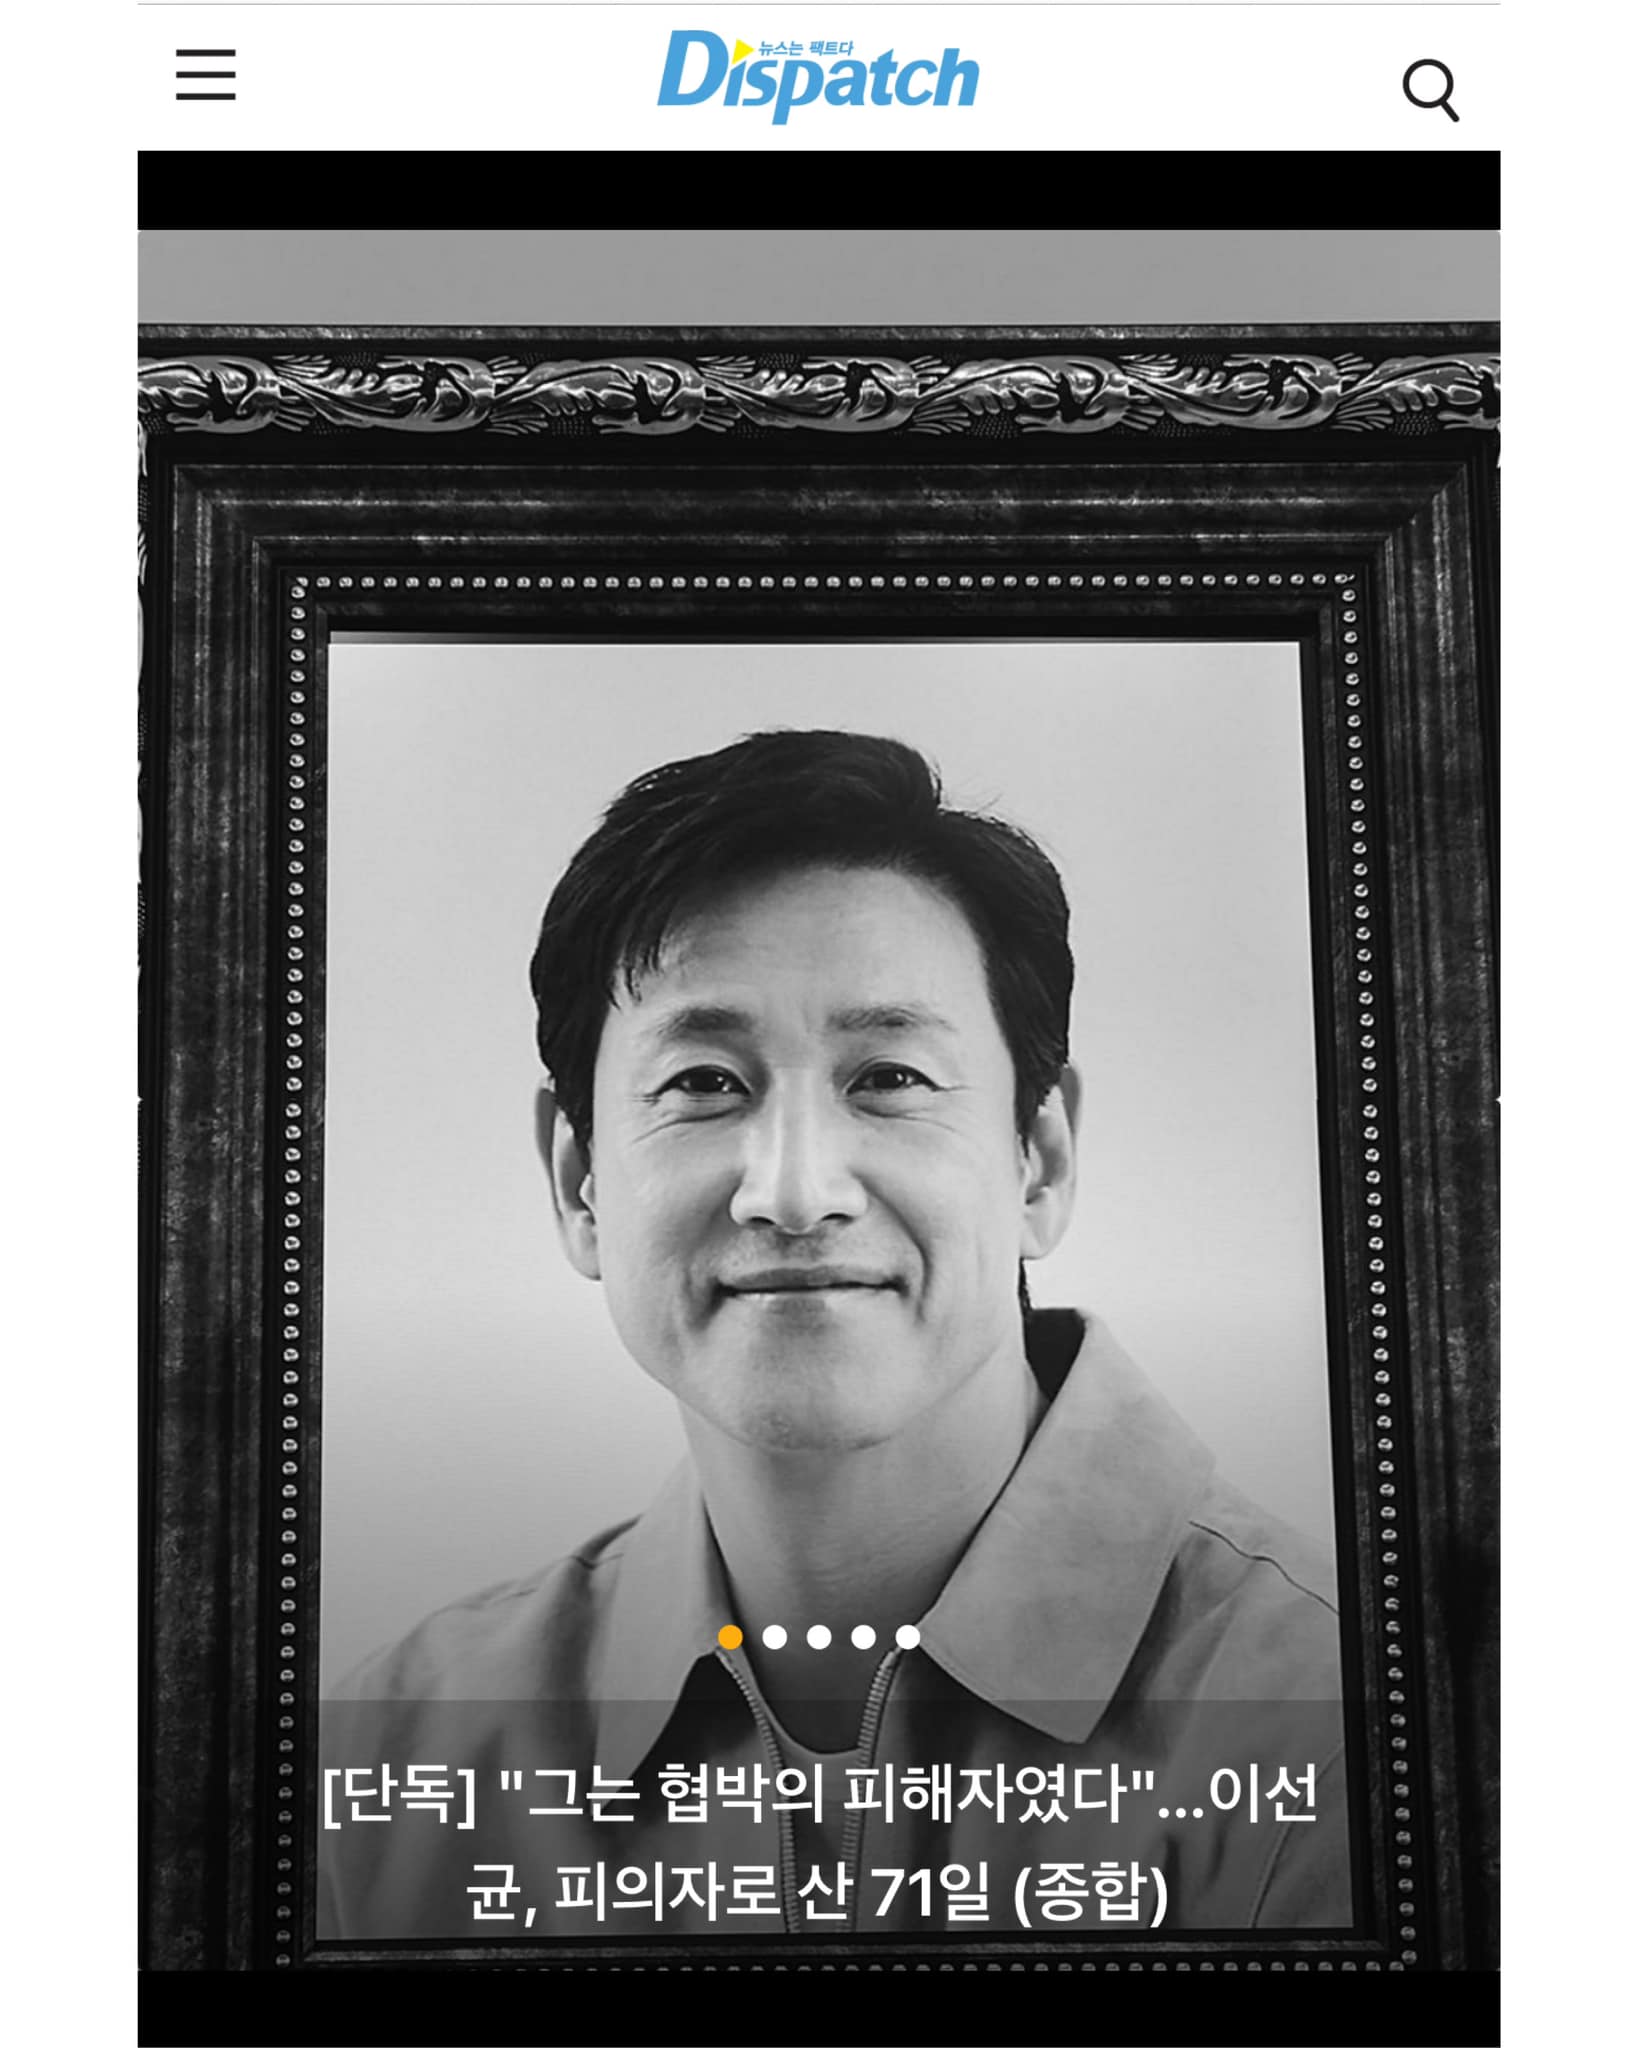 Bài báo điều tra về sự ra đi của Lee Sun Kyun vẫn được treo ở trang đầu của Dispatch